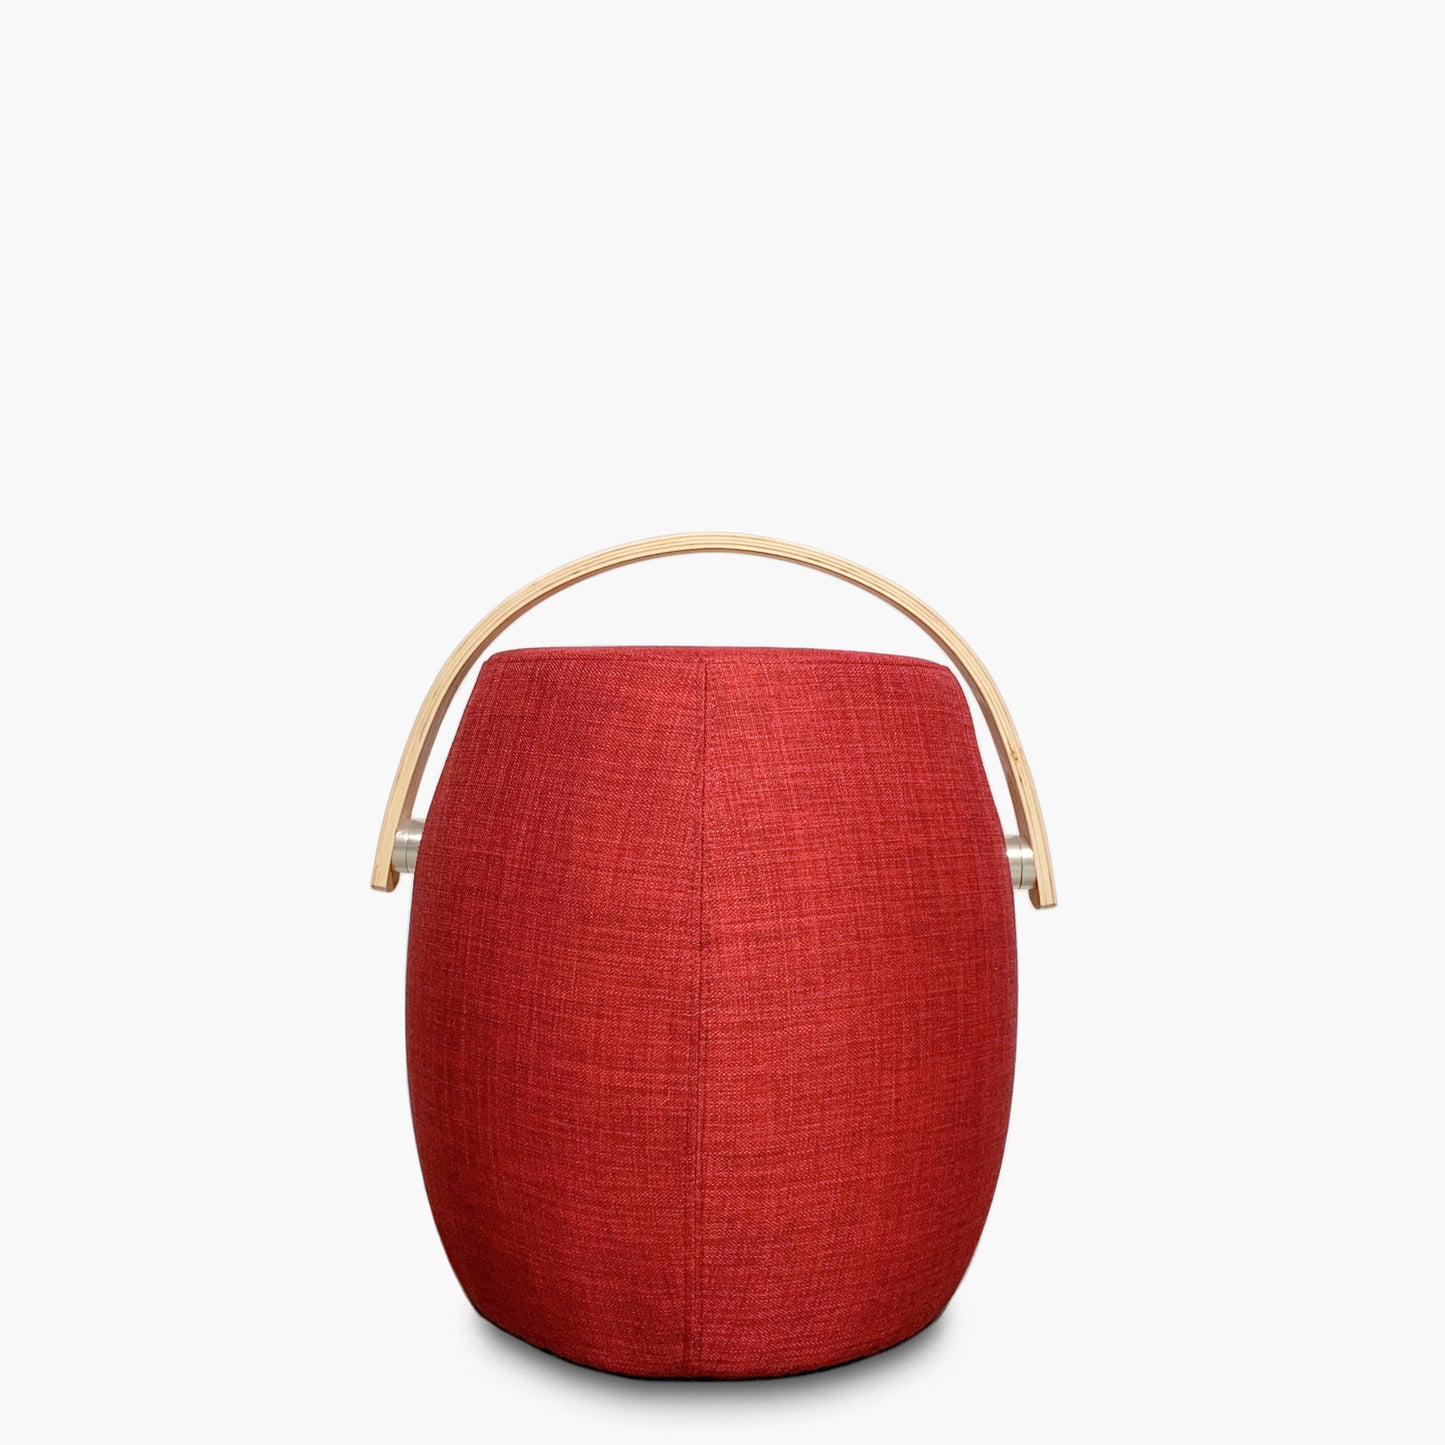 pouf-asa-de-madera-rojo-form-design